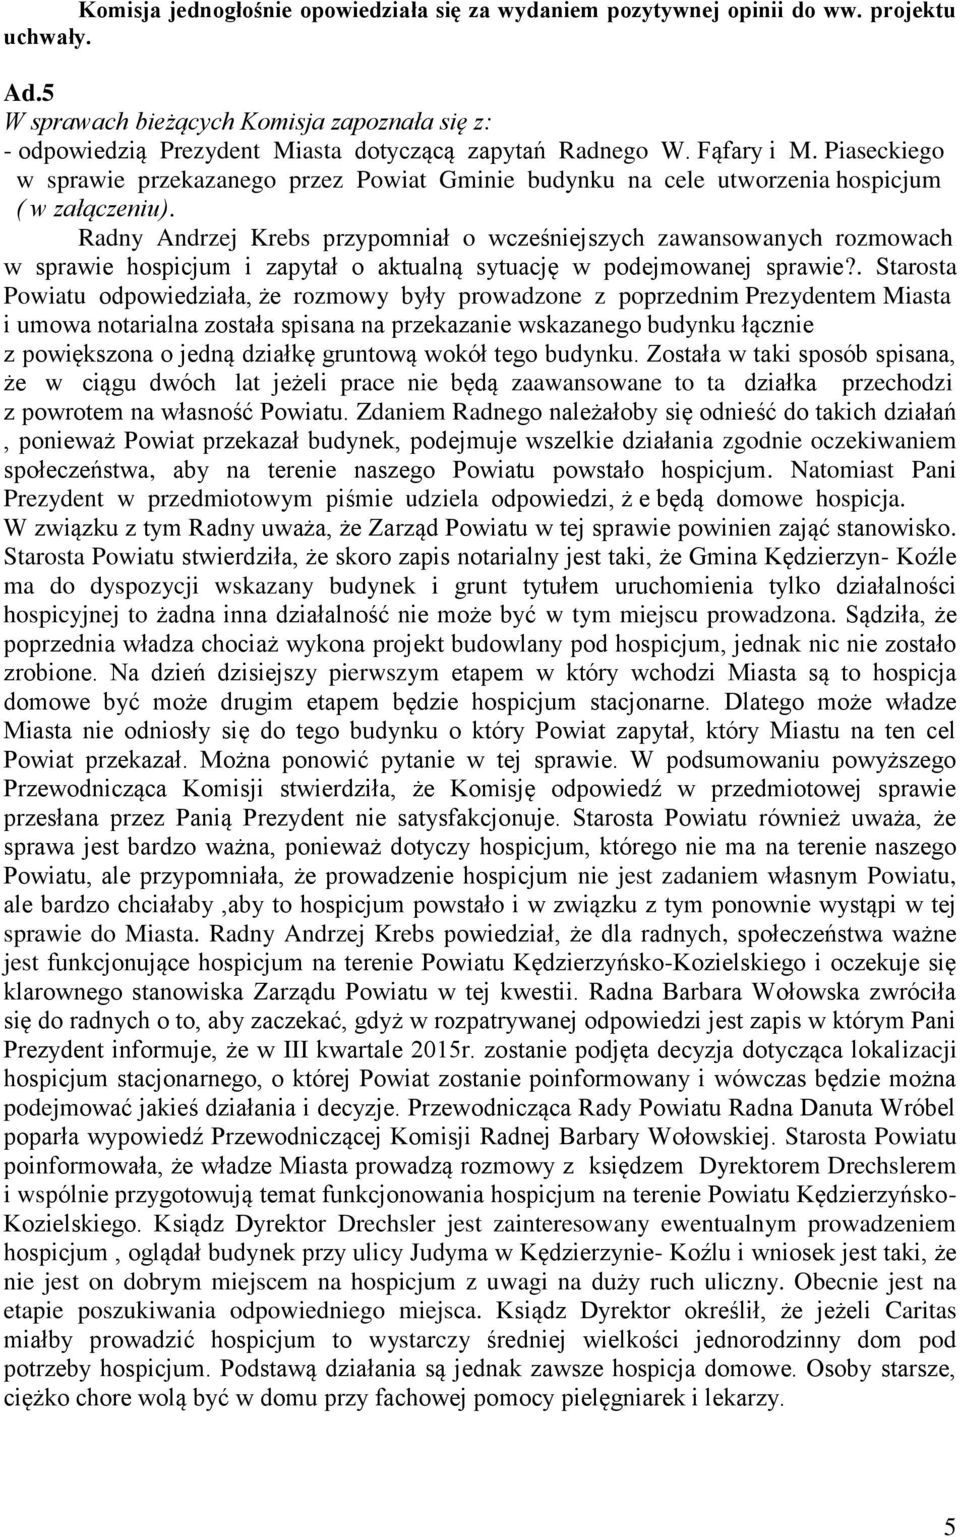 Piaseckiego w sprawie przekazanego przez Powiat Gminie budynku na cele utworzenia hospicjum ( w załączeniu).